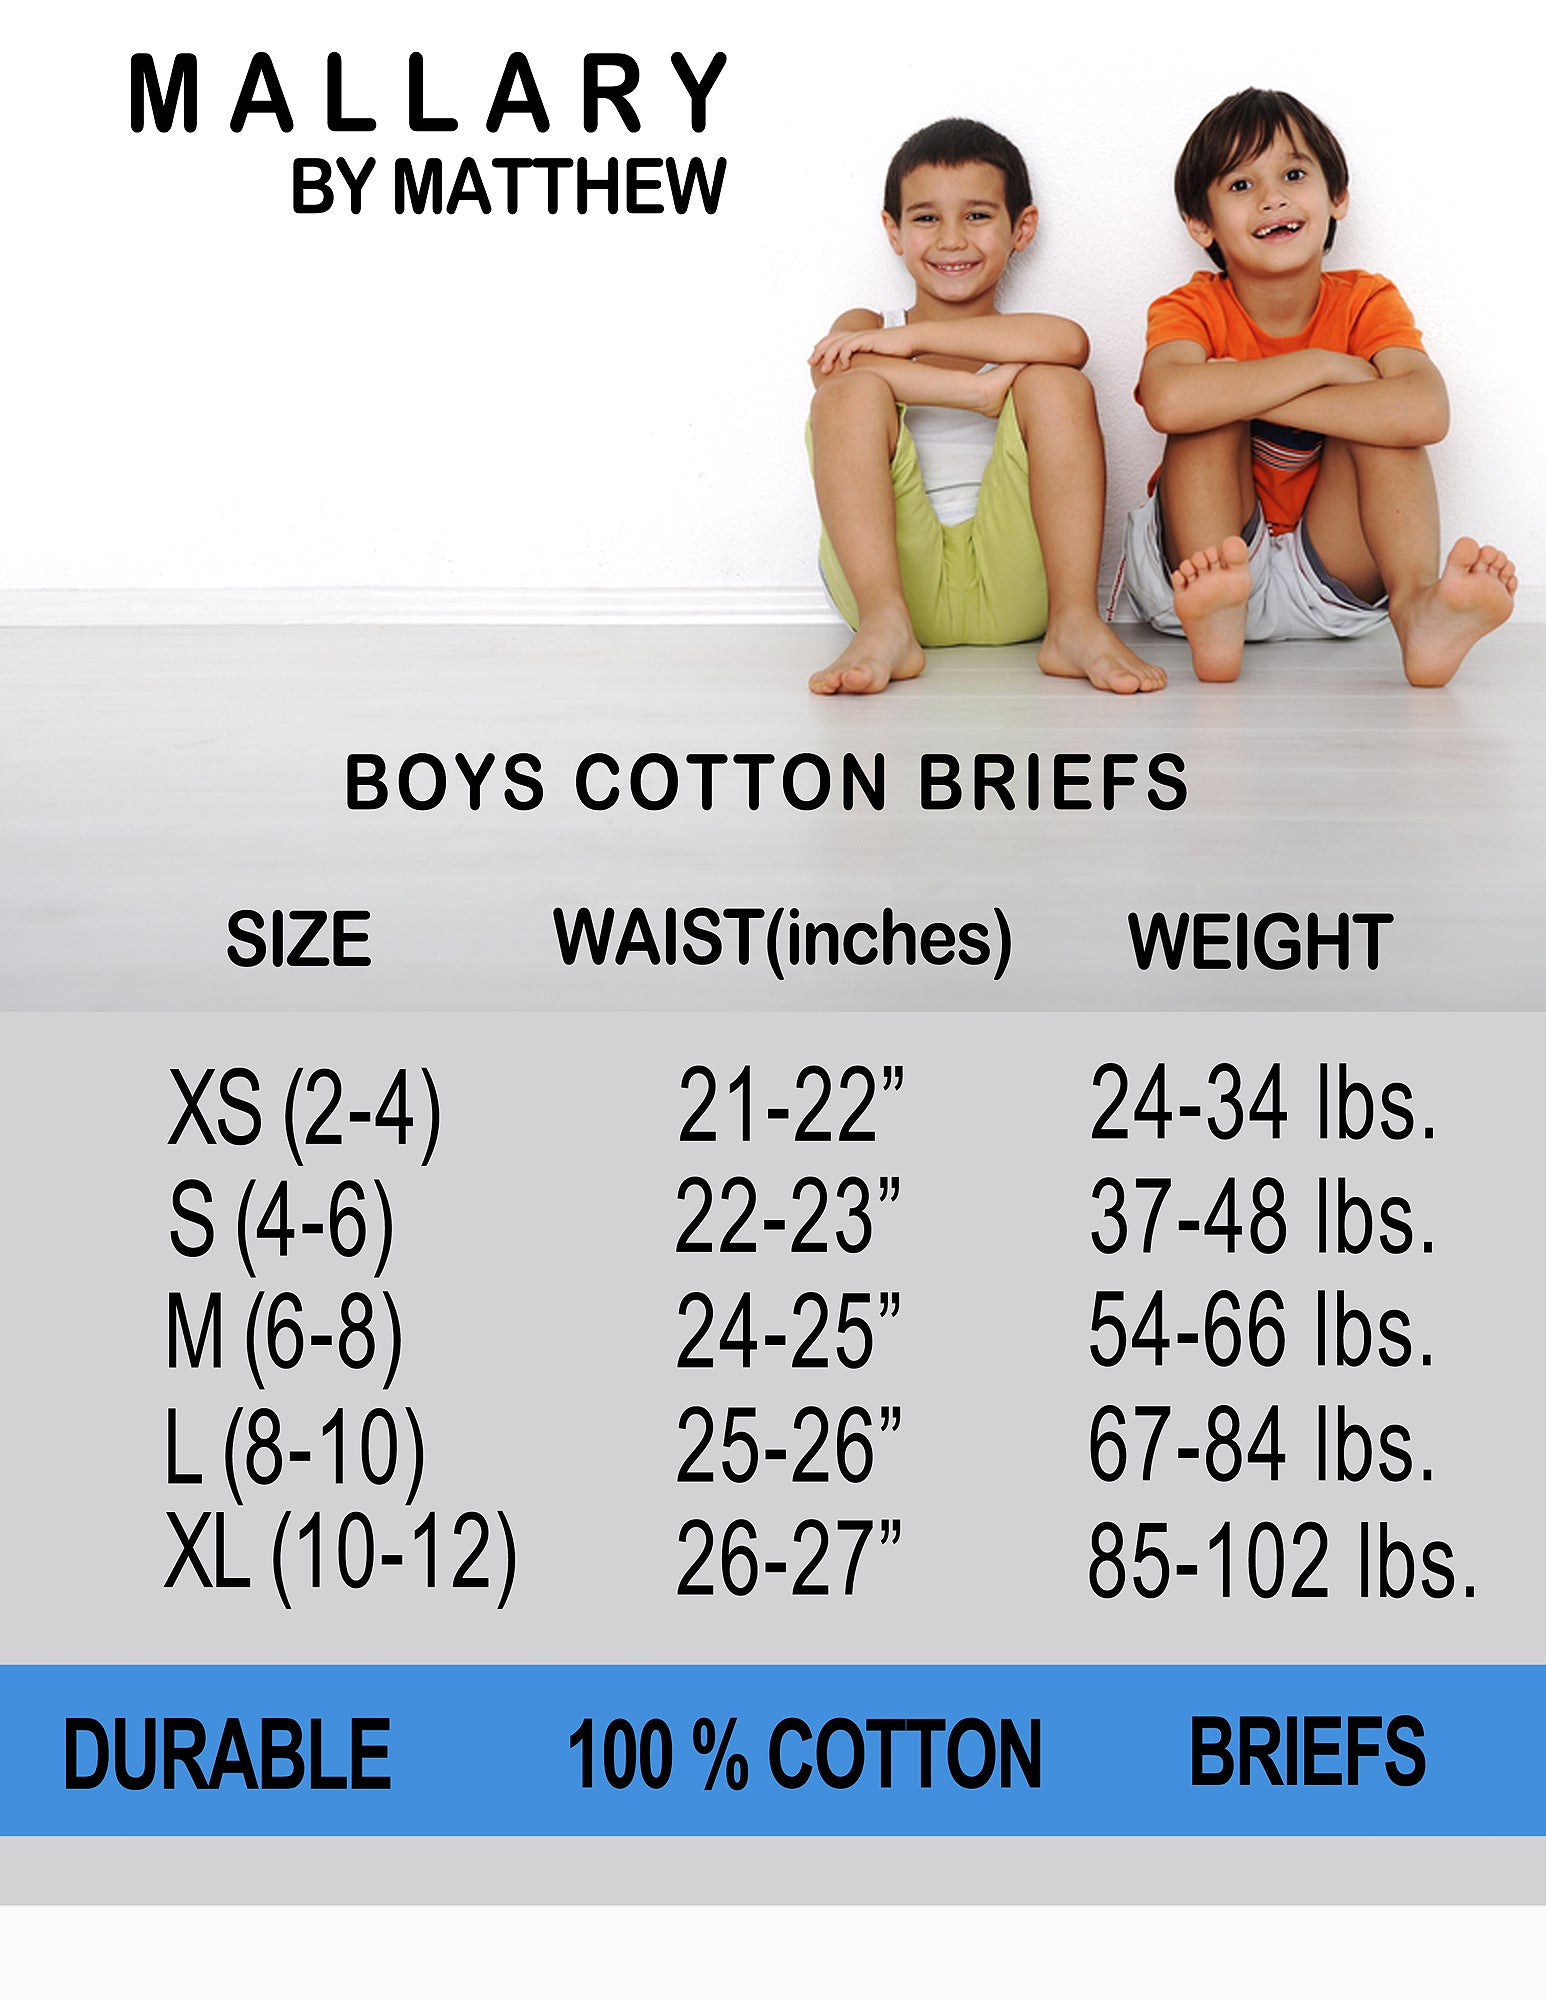 Boys Briefs, Cotton Briefs Underwear, Mallary by Matthew – Mallary by  Matthew